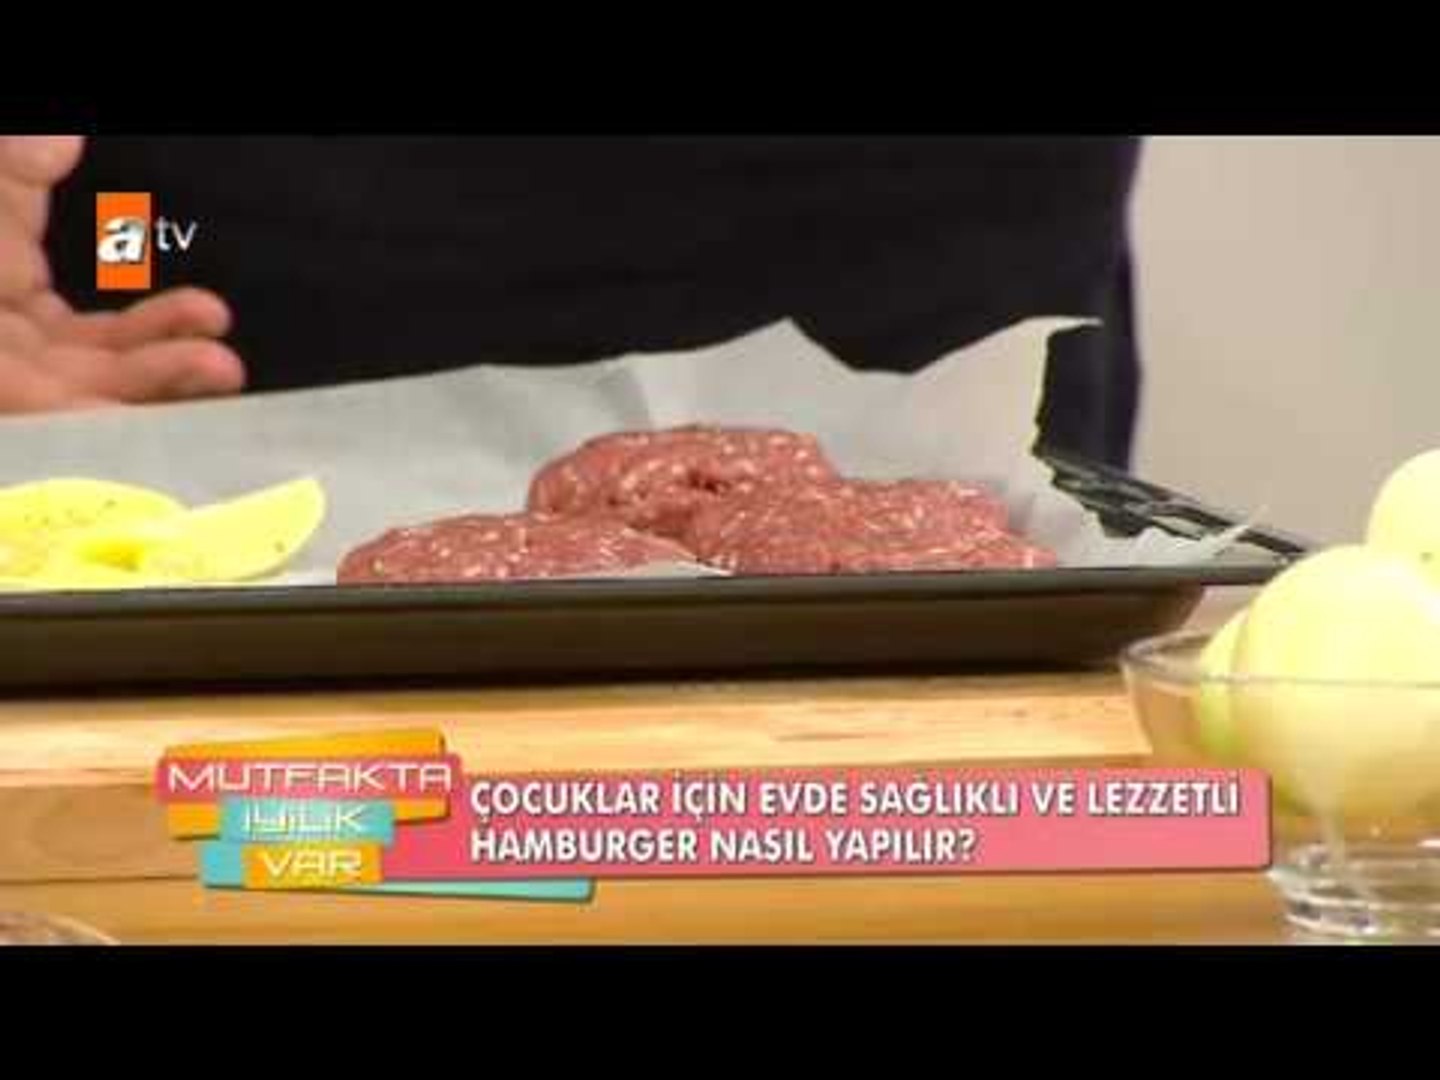 Çocuklar için sağlıklı ve lezzetli hamburger nasıl yapılır? - Mutfakta  İyilik Var 15. bölüm - atv - Dailymotion Video